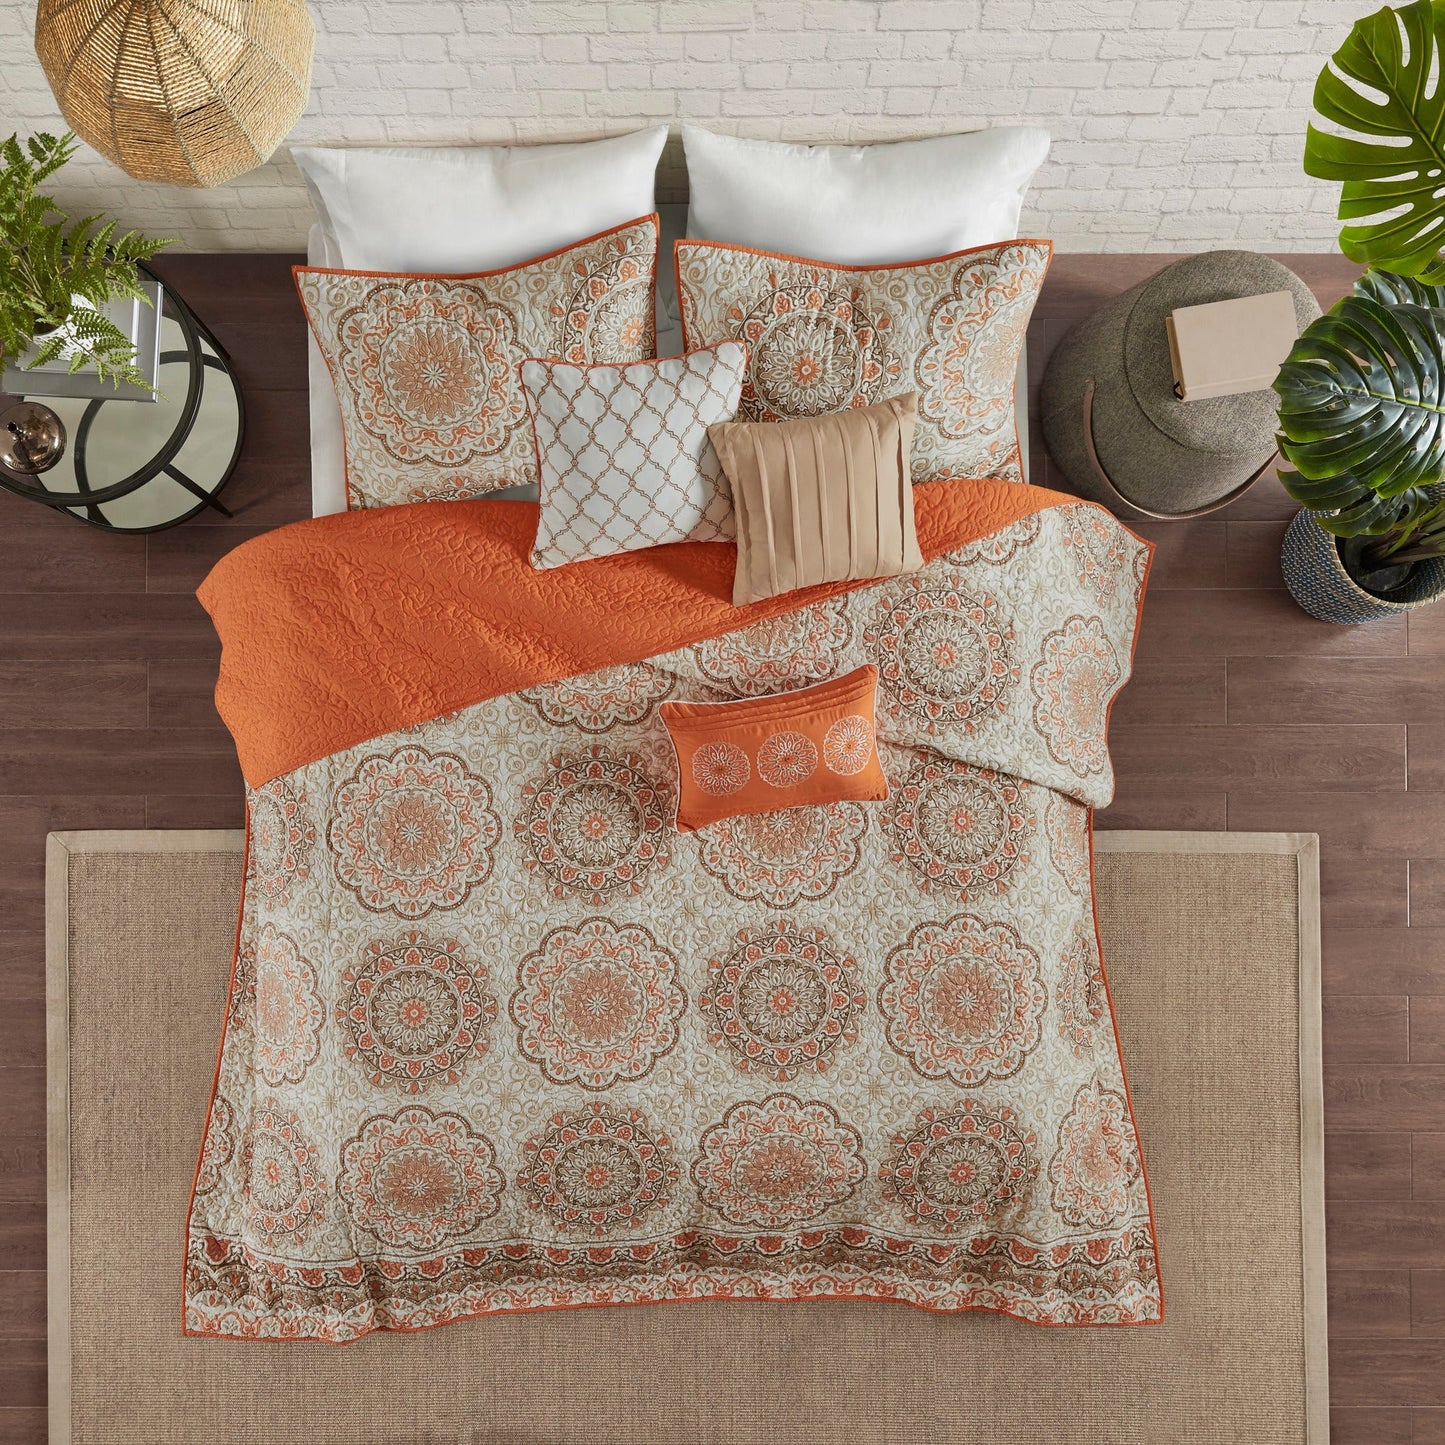 Menara 6 Piece Reversible Quilt Set with Throw Pillows